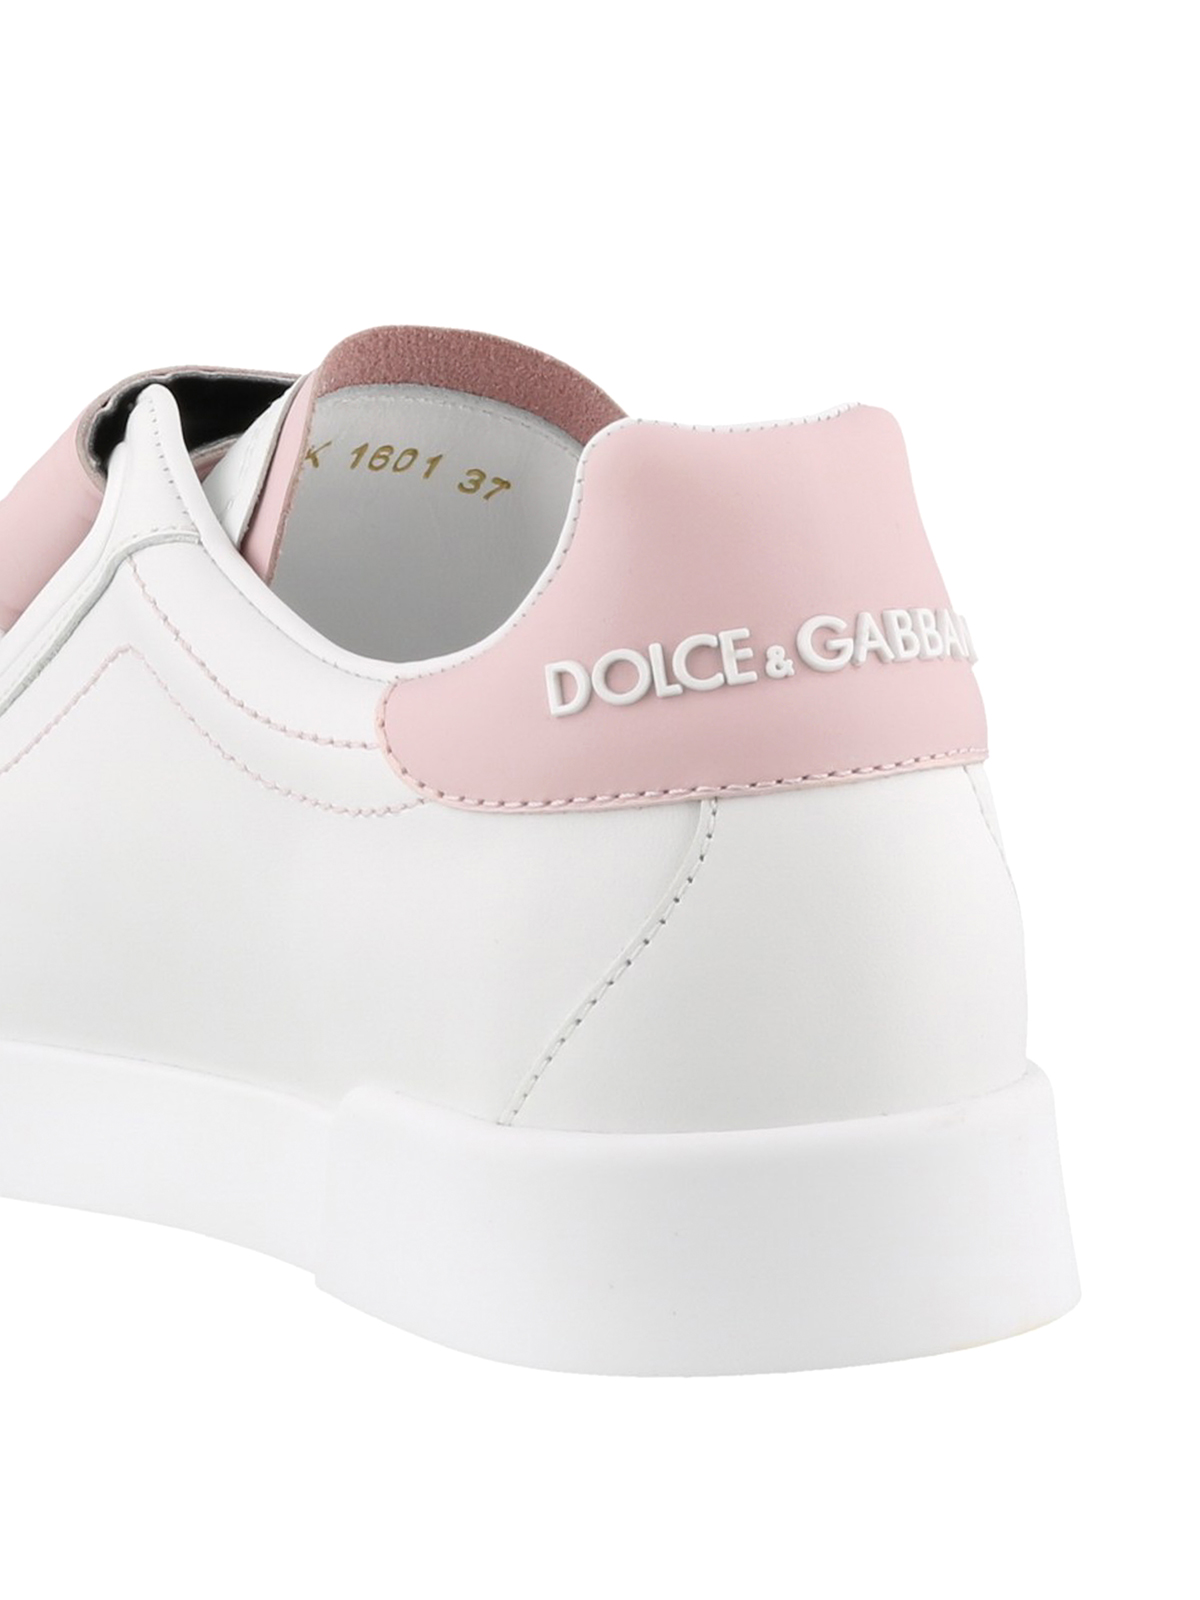 Dolce \u0026 Gabbana - Sneaker bianche e rosa con strappi - sneakers -  CK1601AH36187587